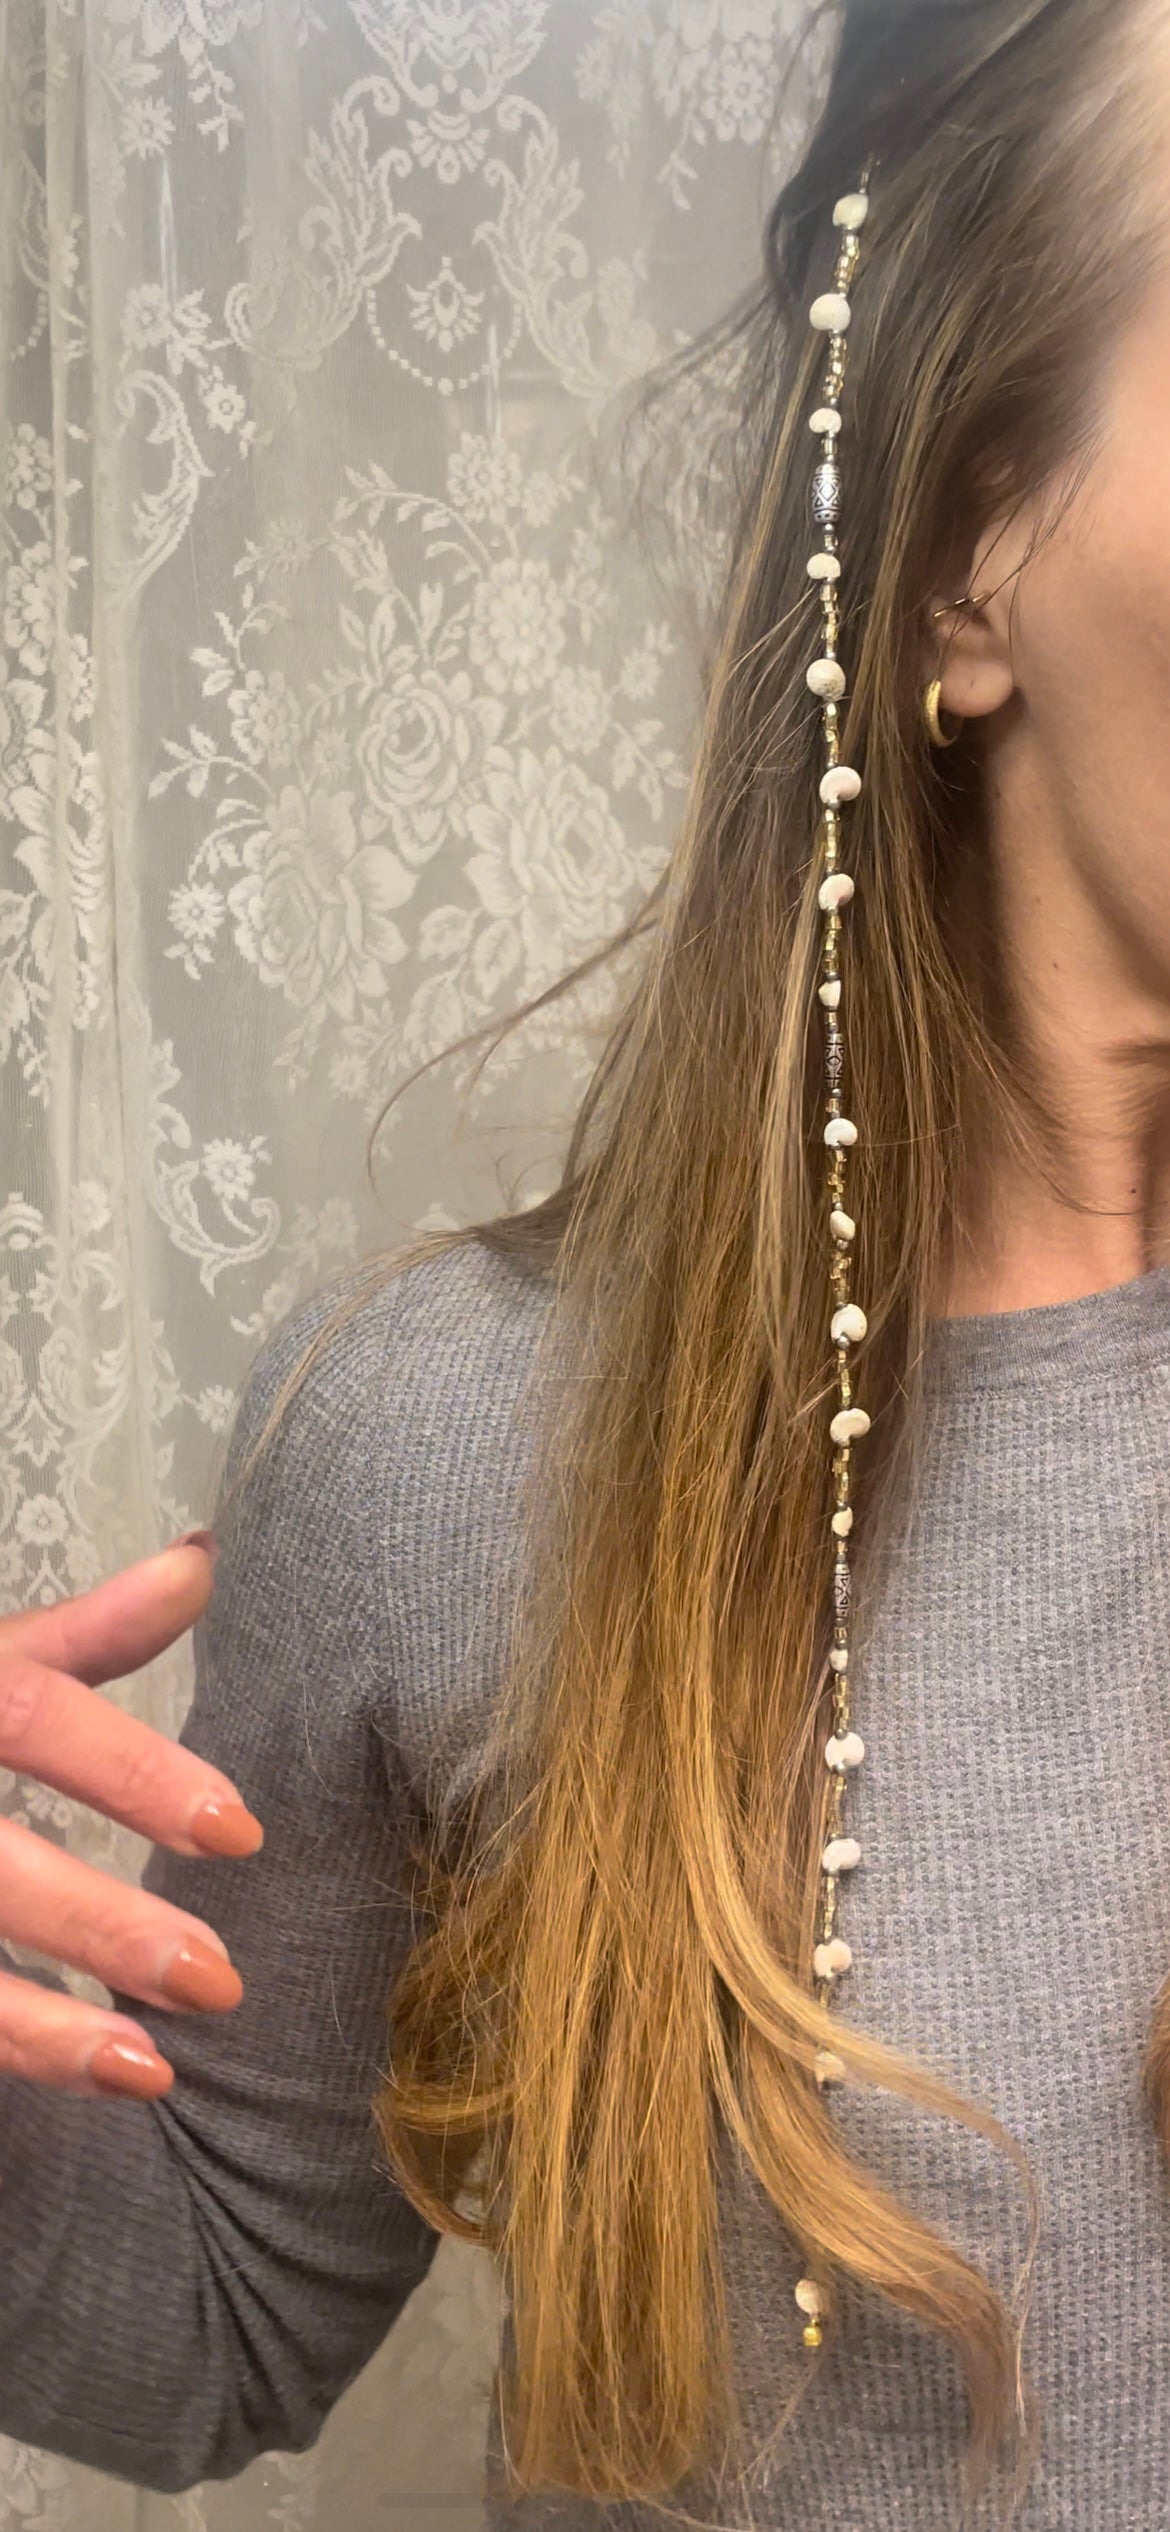 Under The Boardwalk Hair Chain (17")